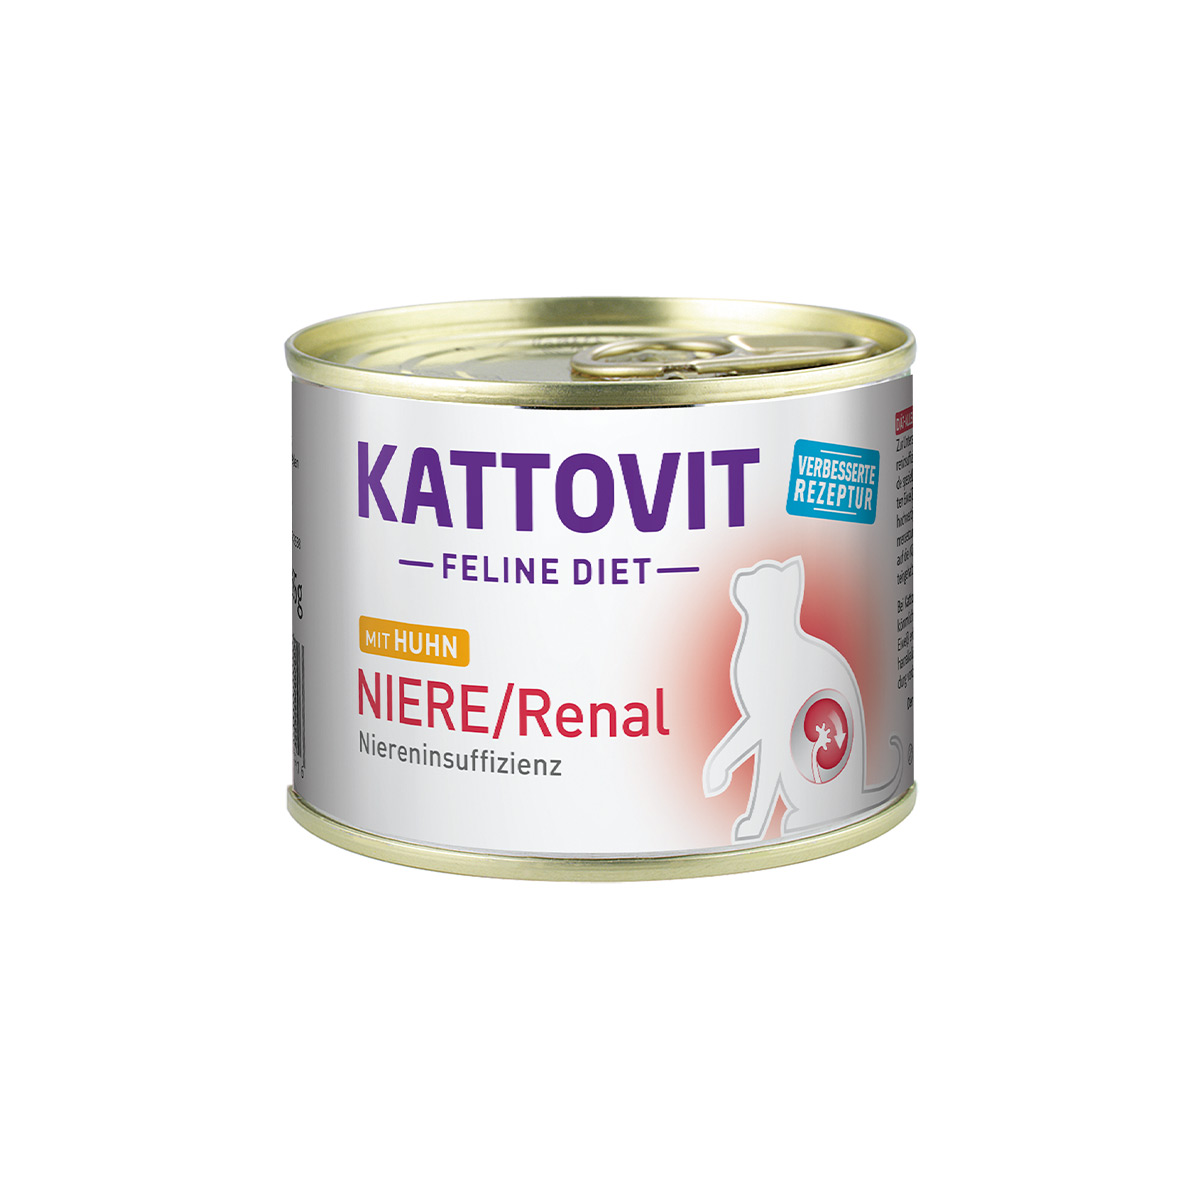 Kattovit Feline Diet Niere Renal Huhn 12x185g